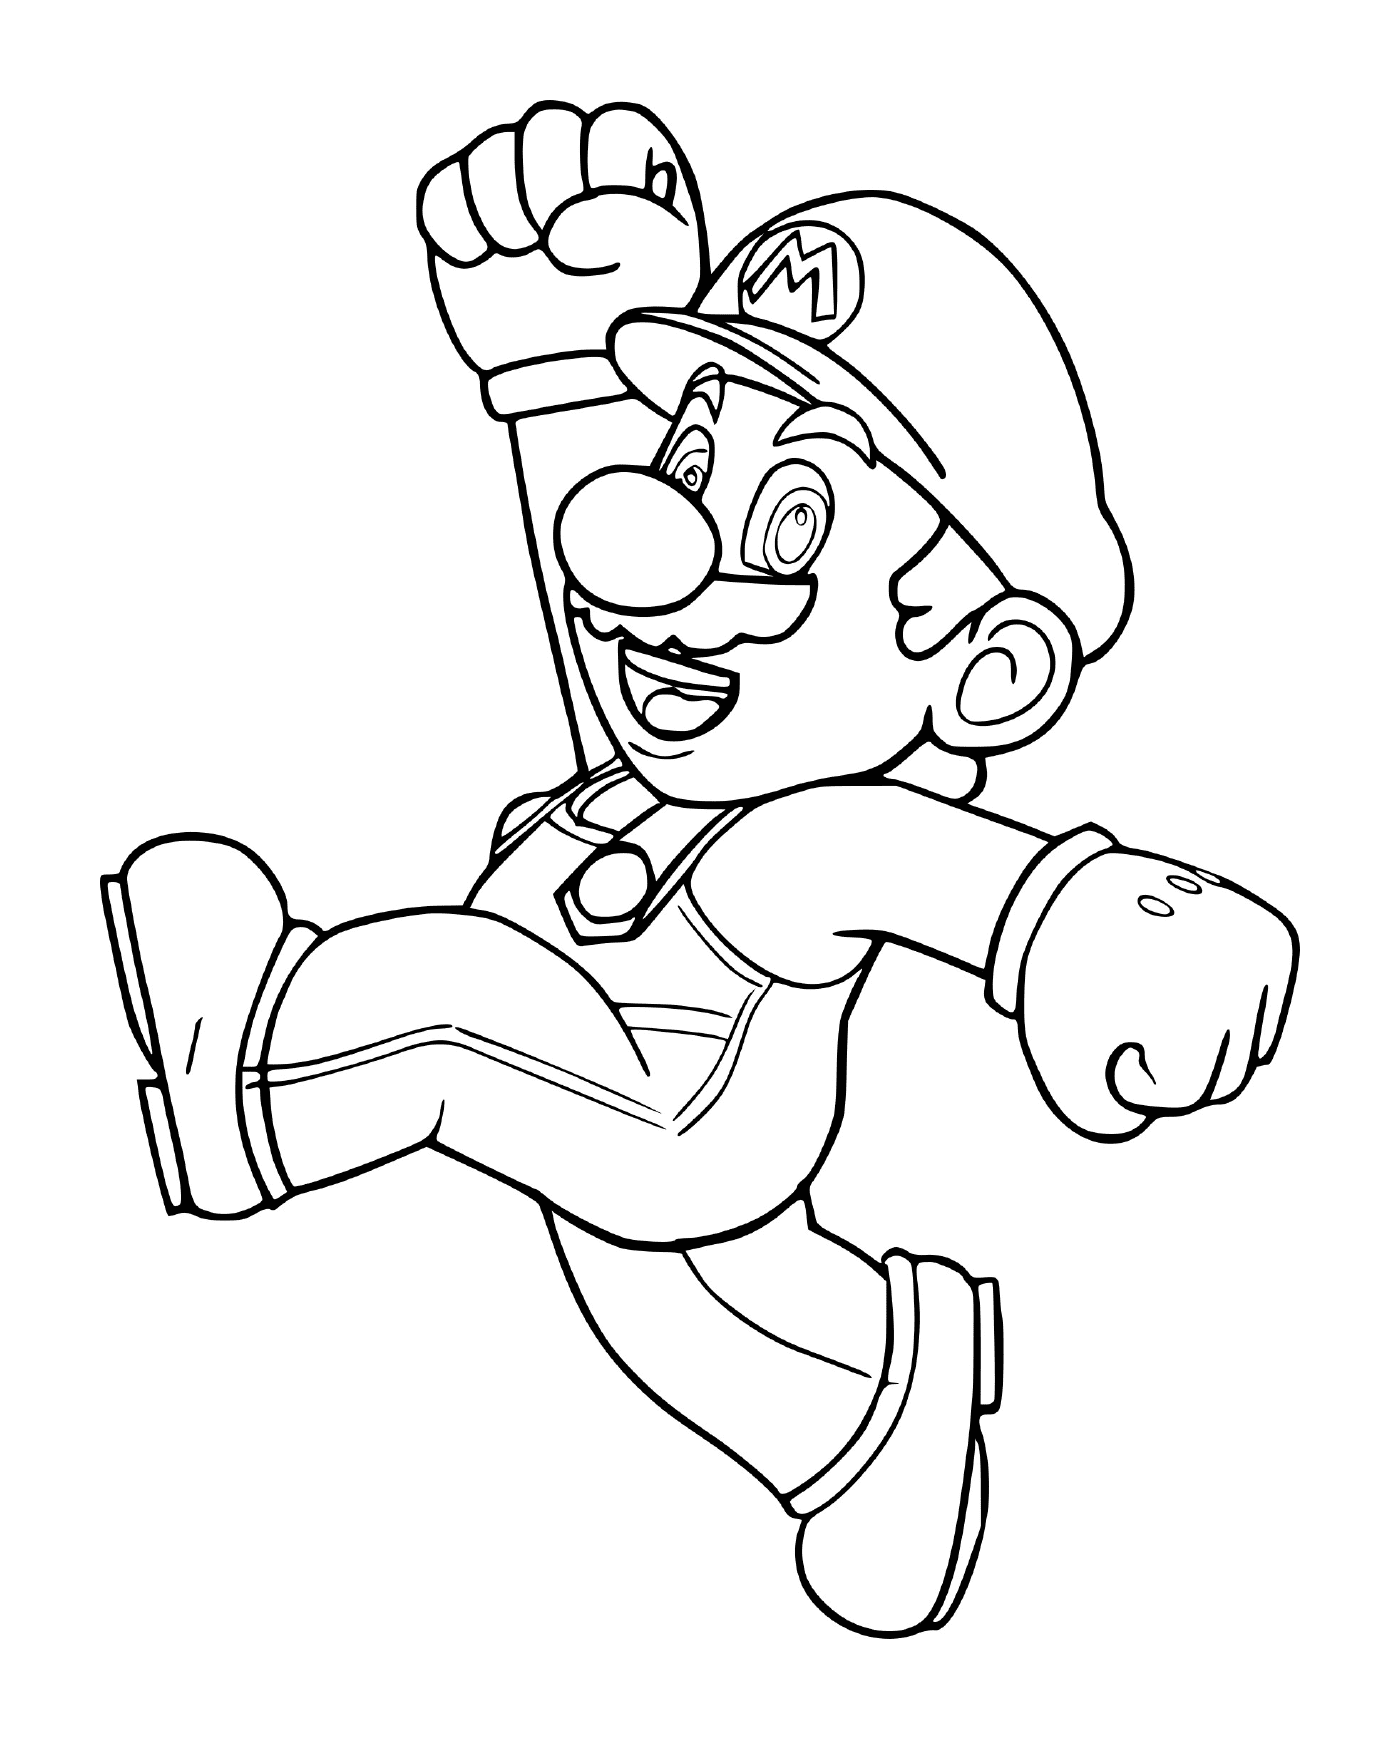  Mario Bros original, un hombre corriendo 